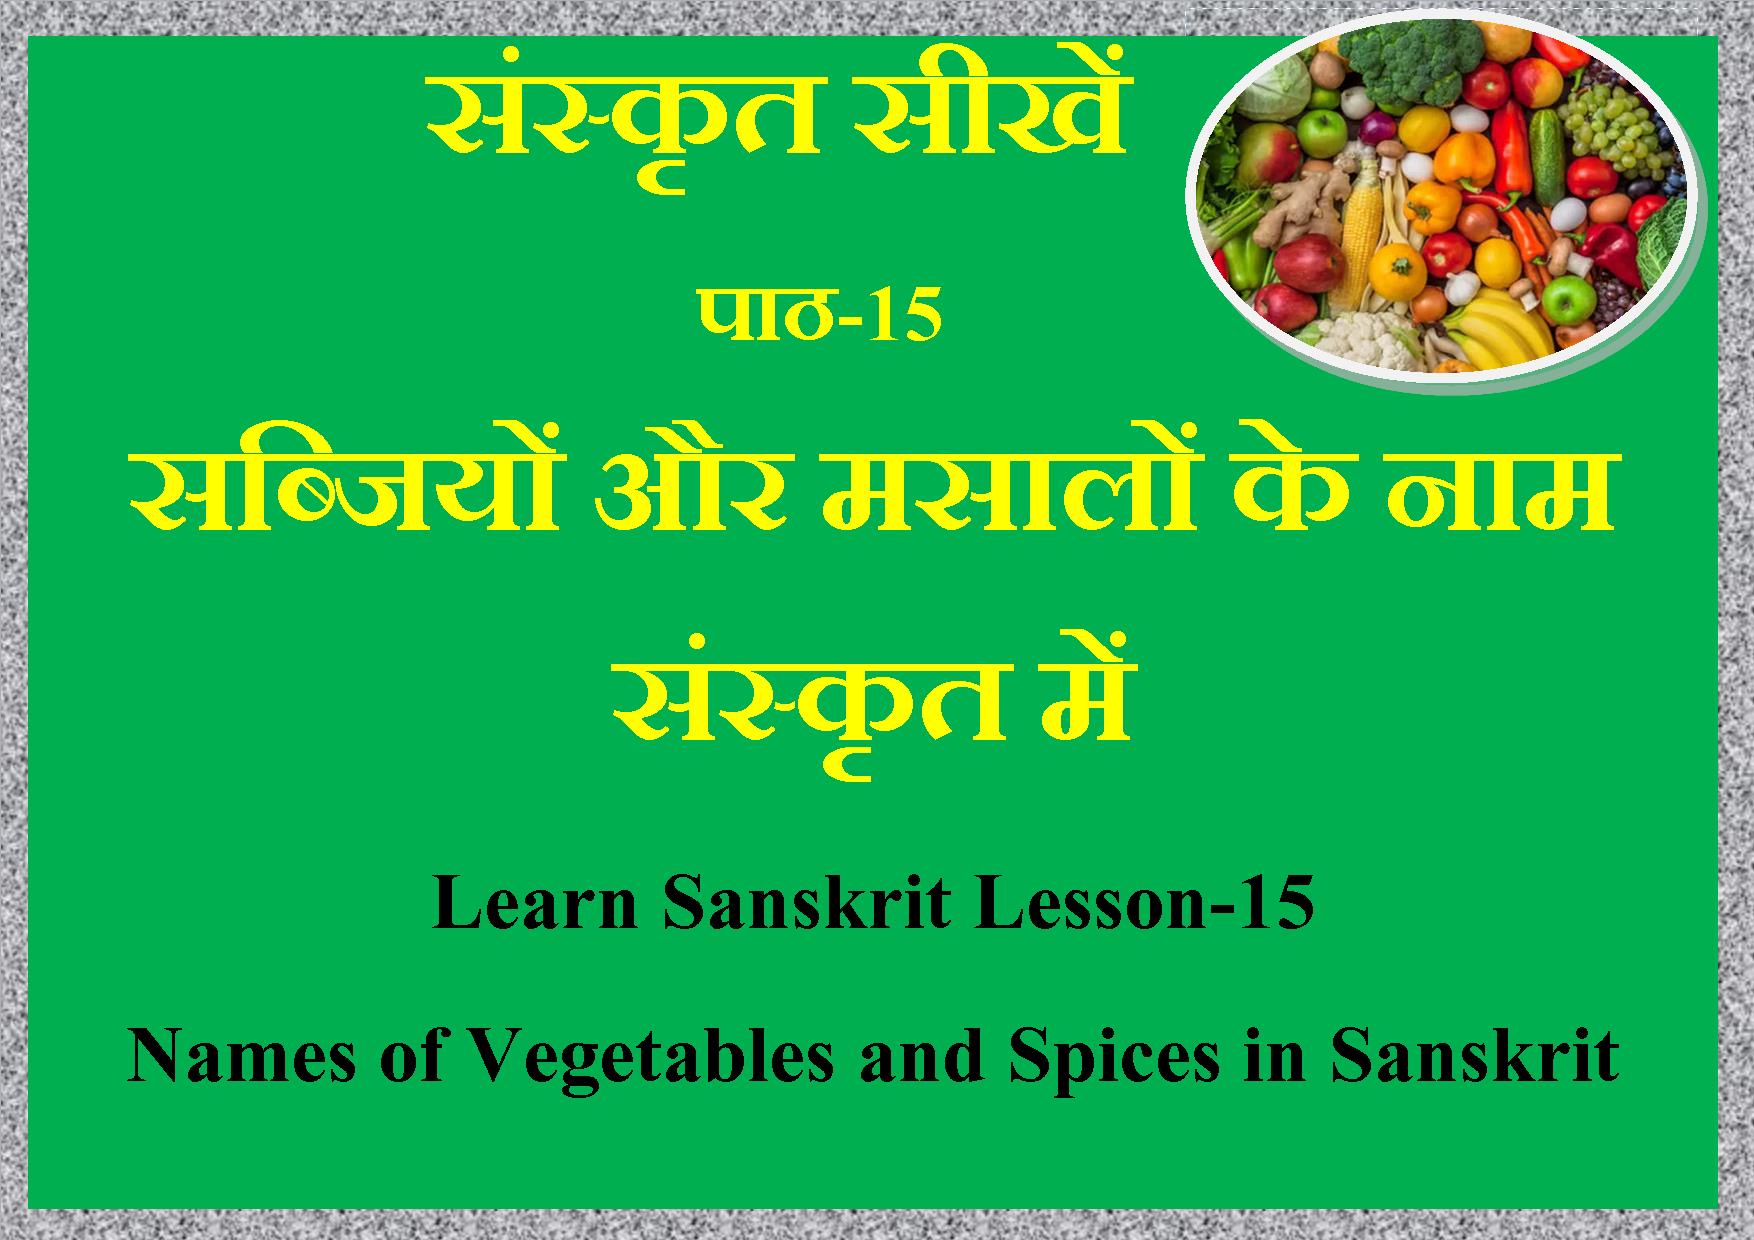 सब्जियों और मसालों के नाम संस्कृत में